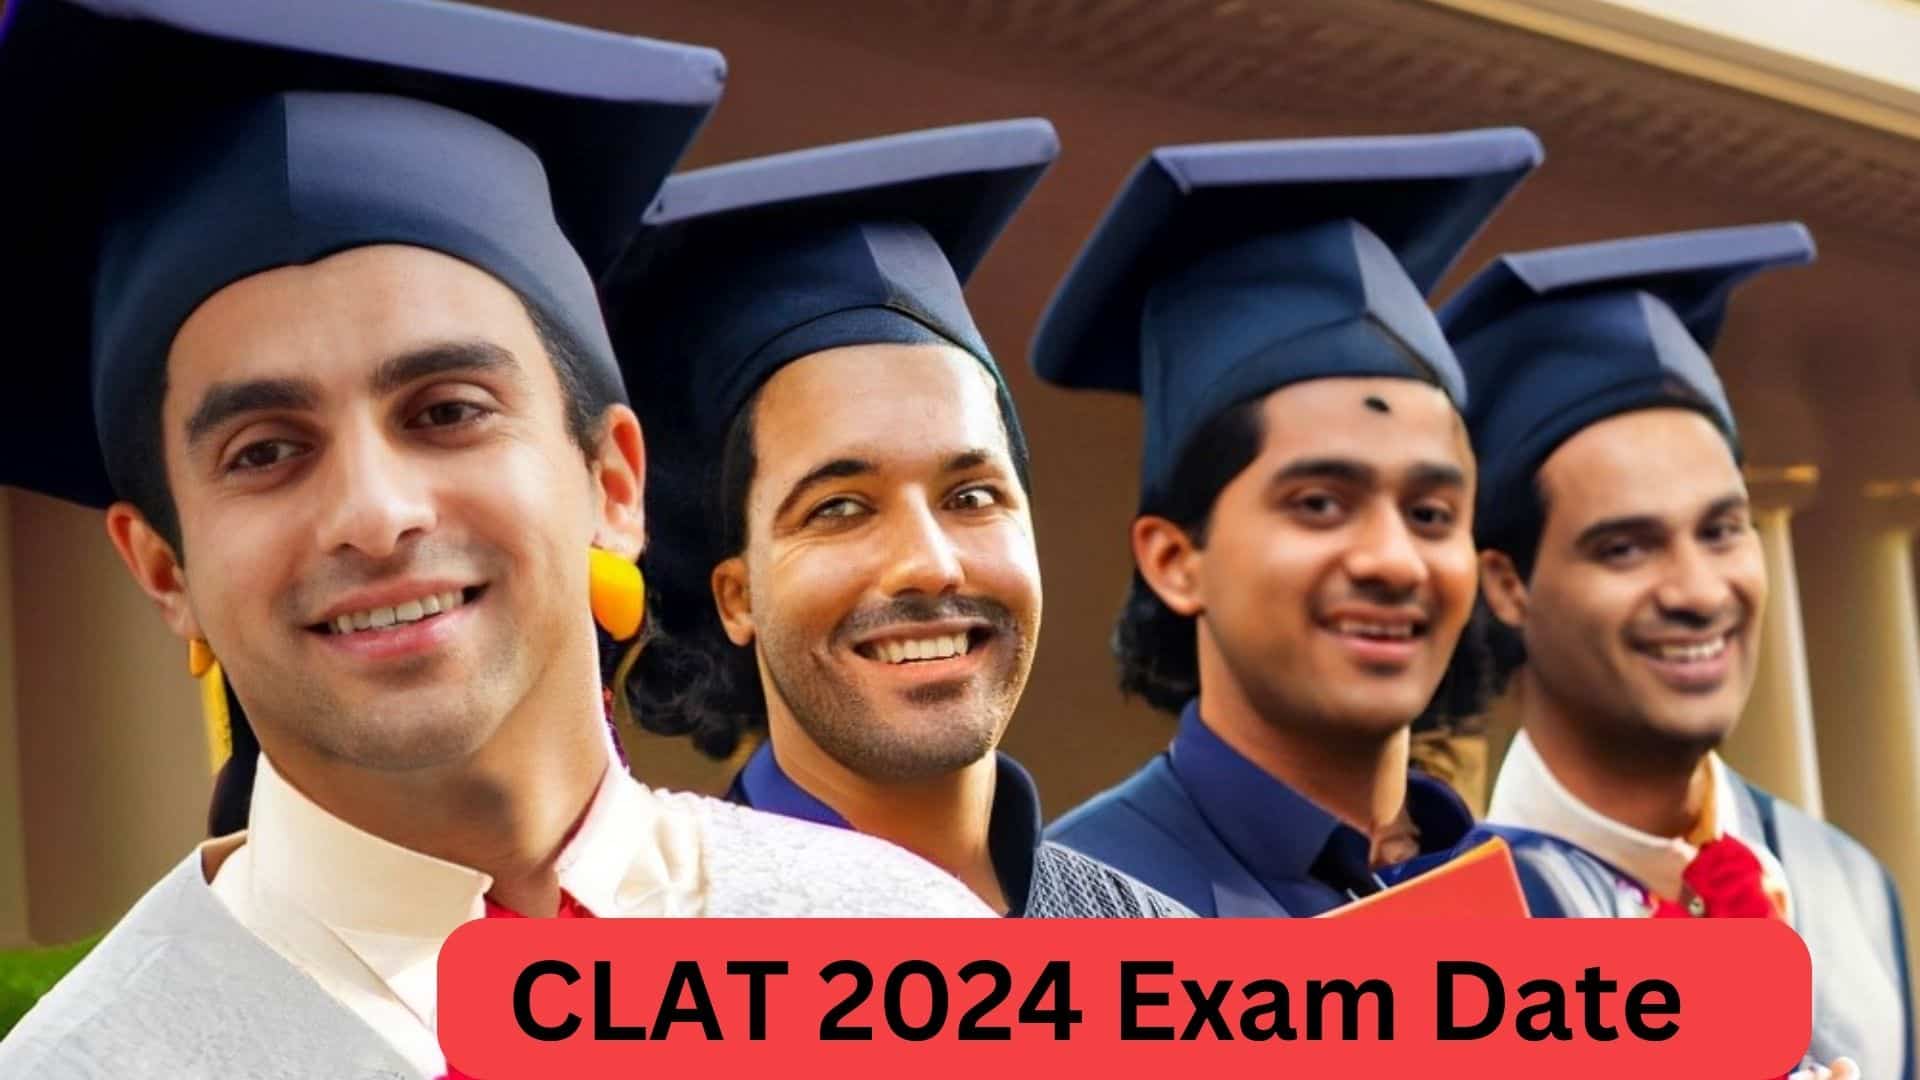 CLAT 2024 Exam Date